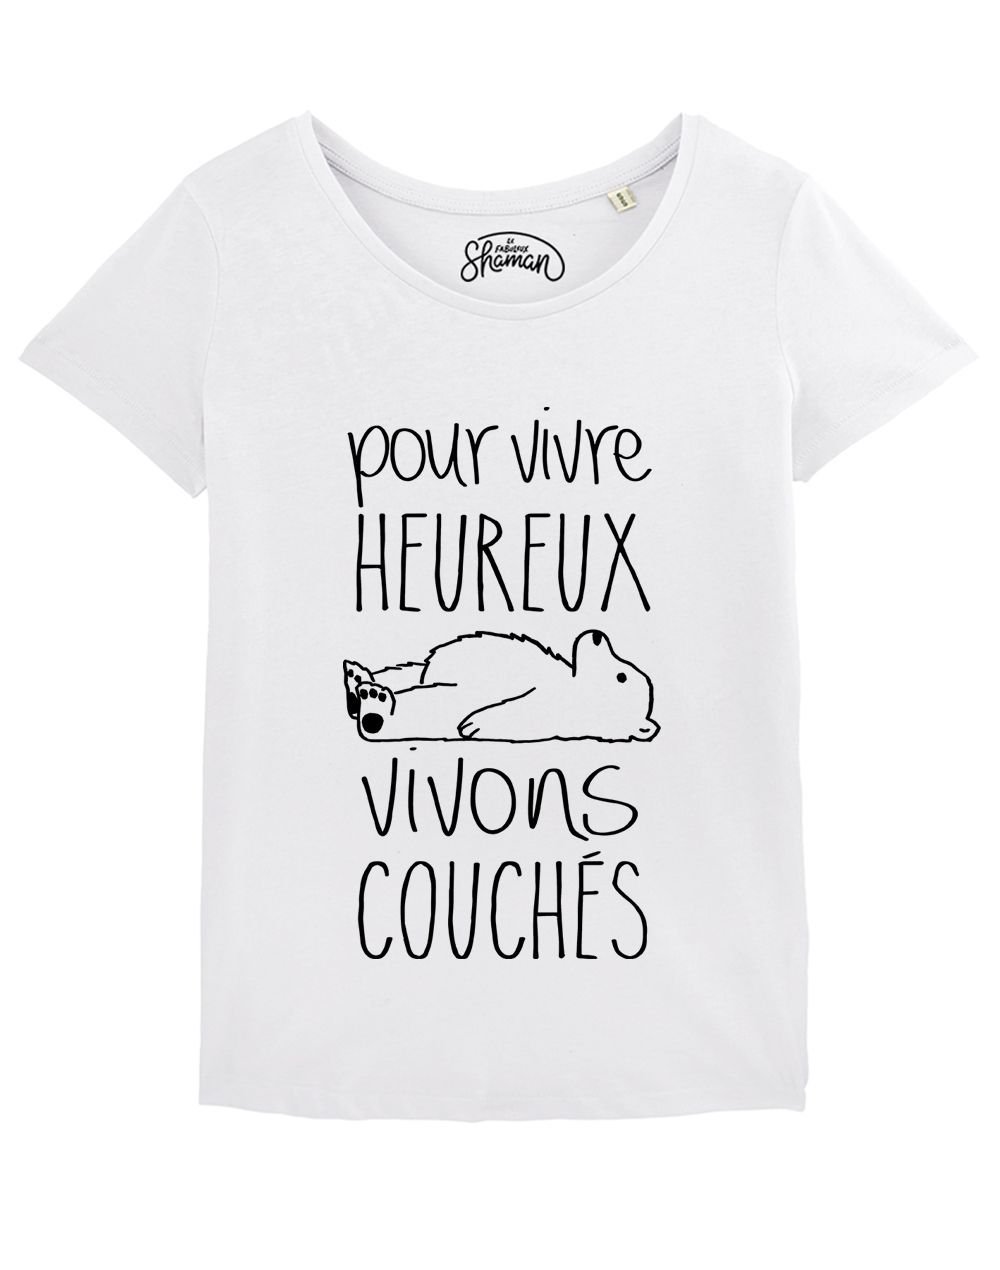 T-shirt "Pour vivre heureux vivons couchés"